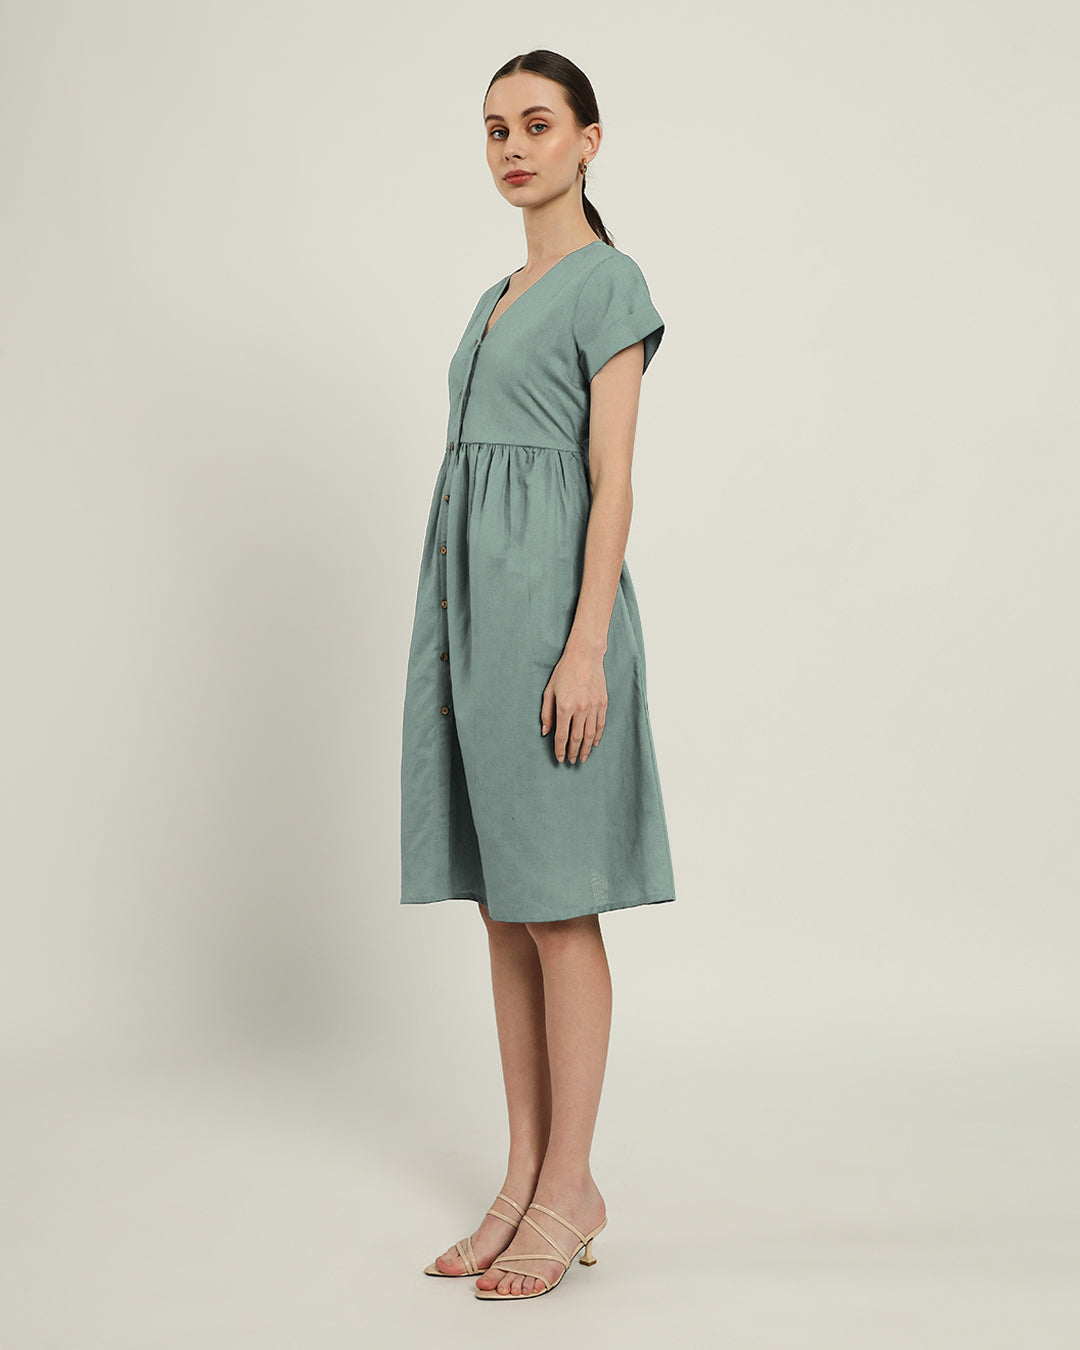 The Valence Daisy Carolina Linen Dress